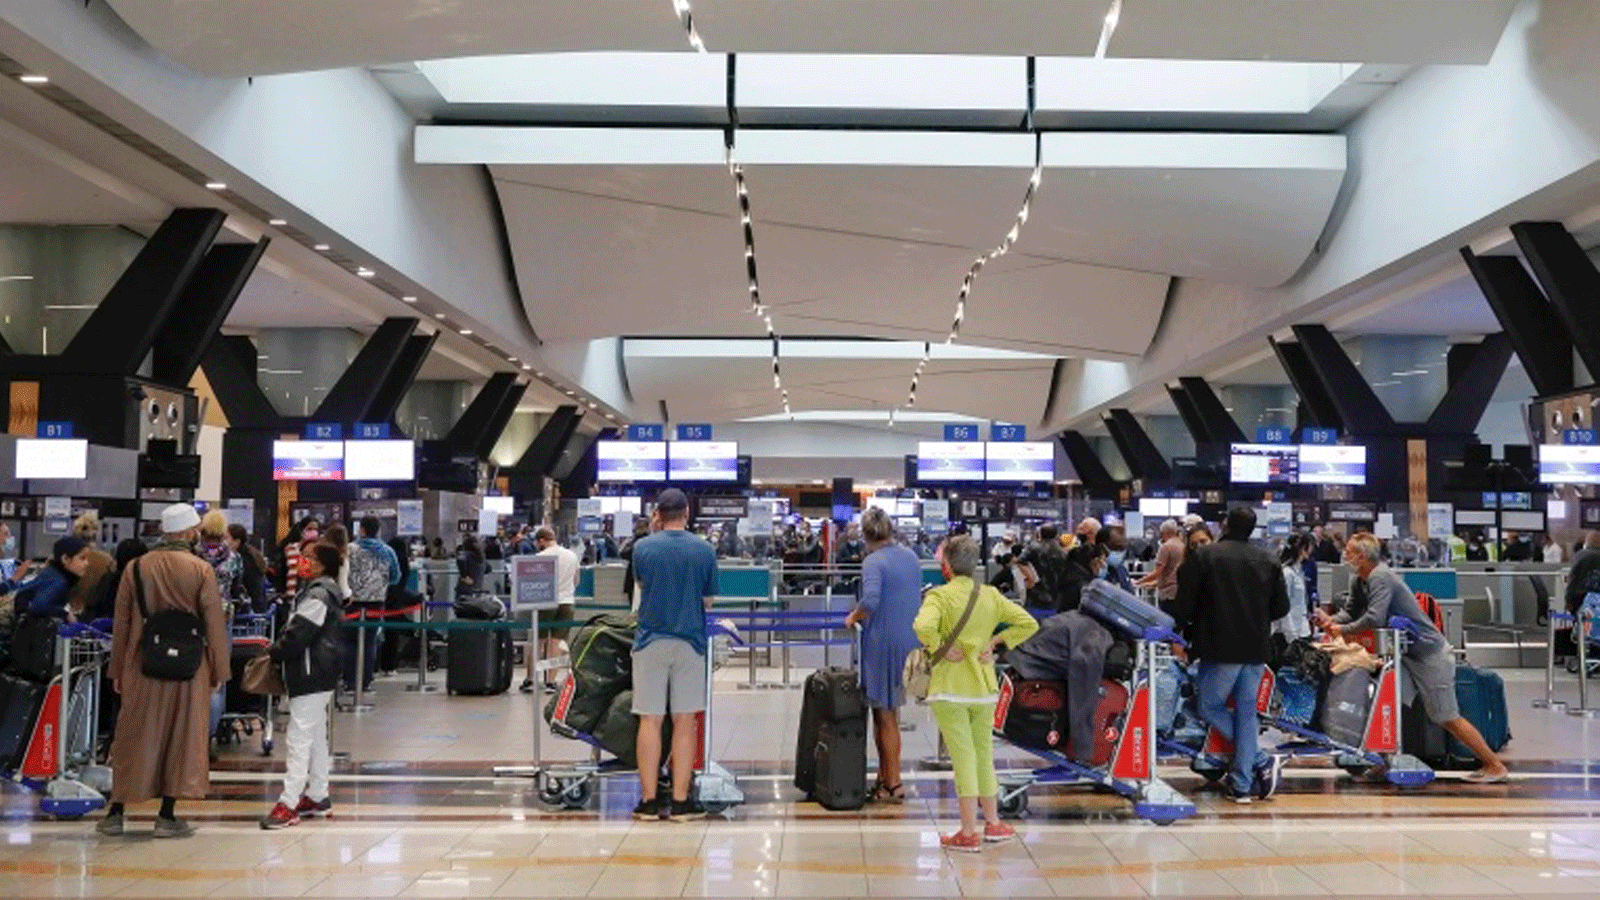 المسافرون يصطفون عند مكتب تسجيل الوصول في مطار أو آر تامبو الدولي في جوهانسبرج بعد أن حظرت عدة دول الرحلات الجوية من جنوب أفريقيا